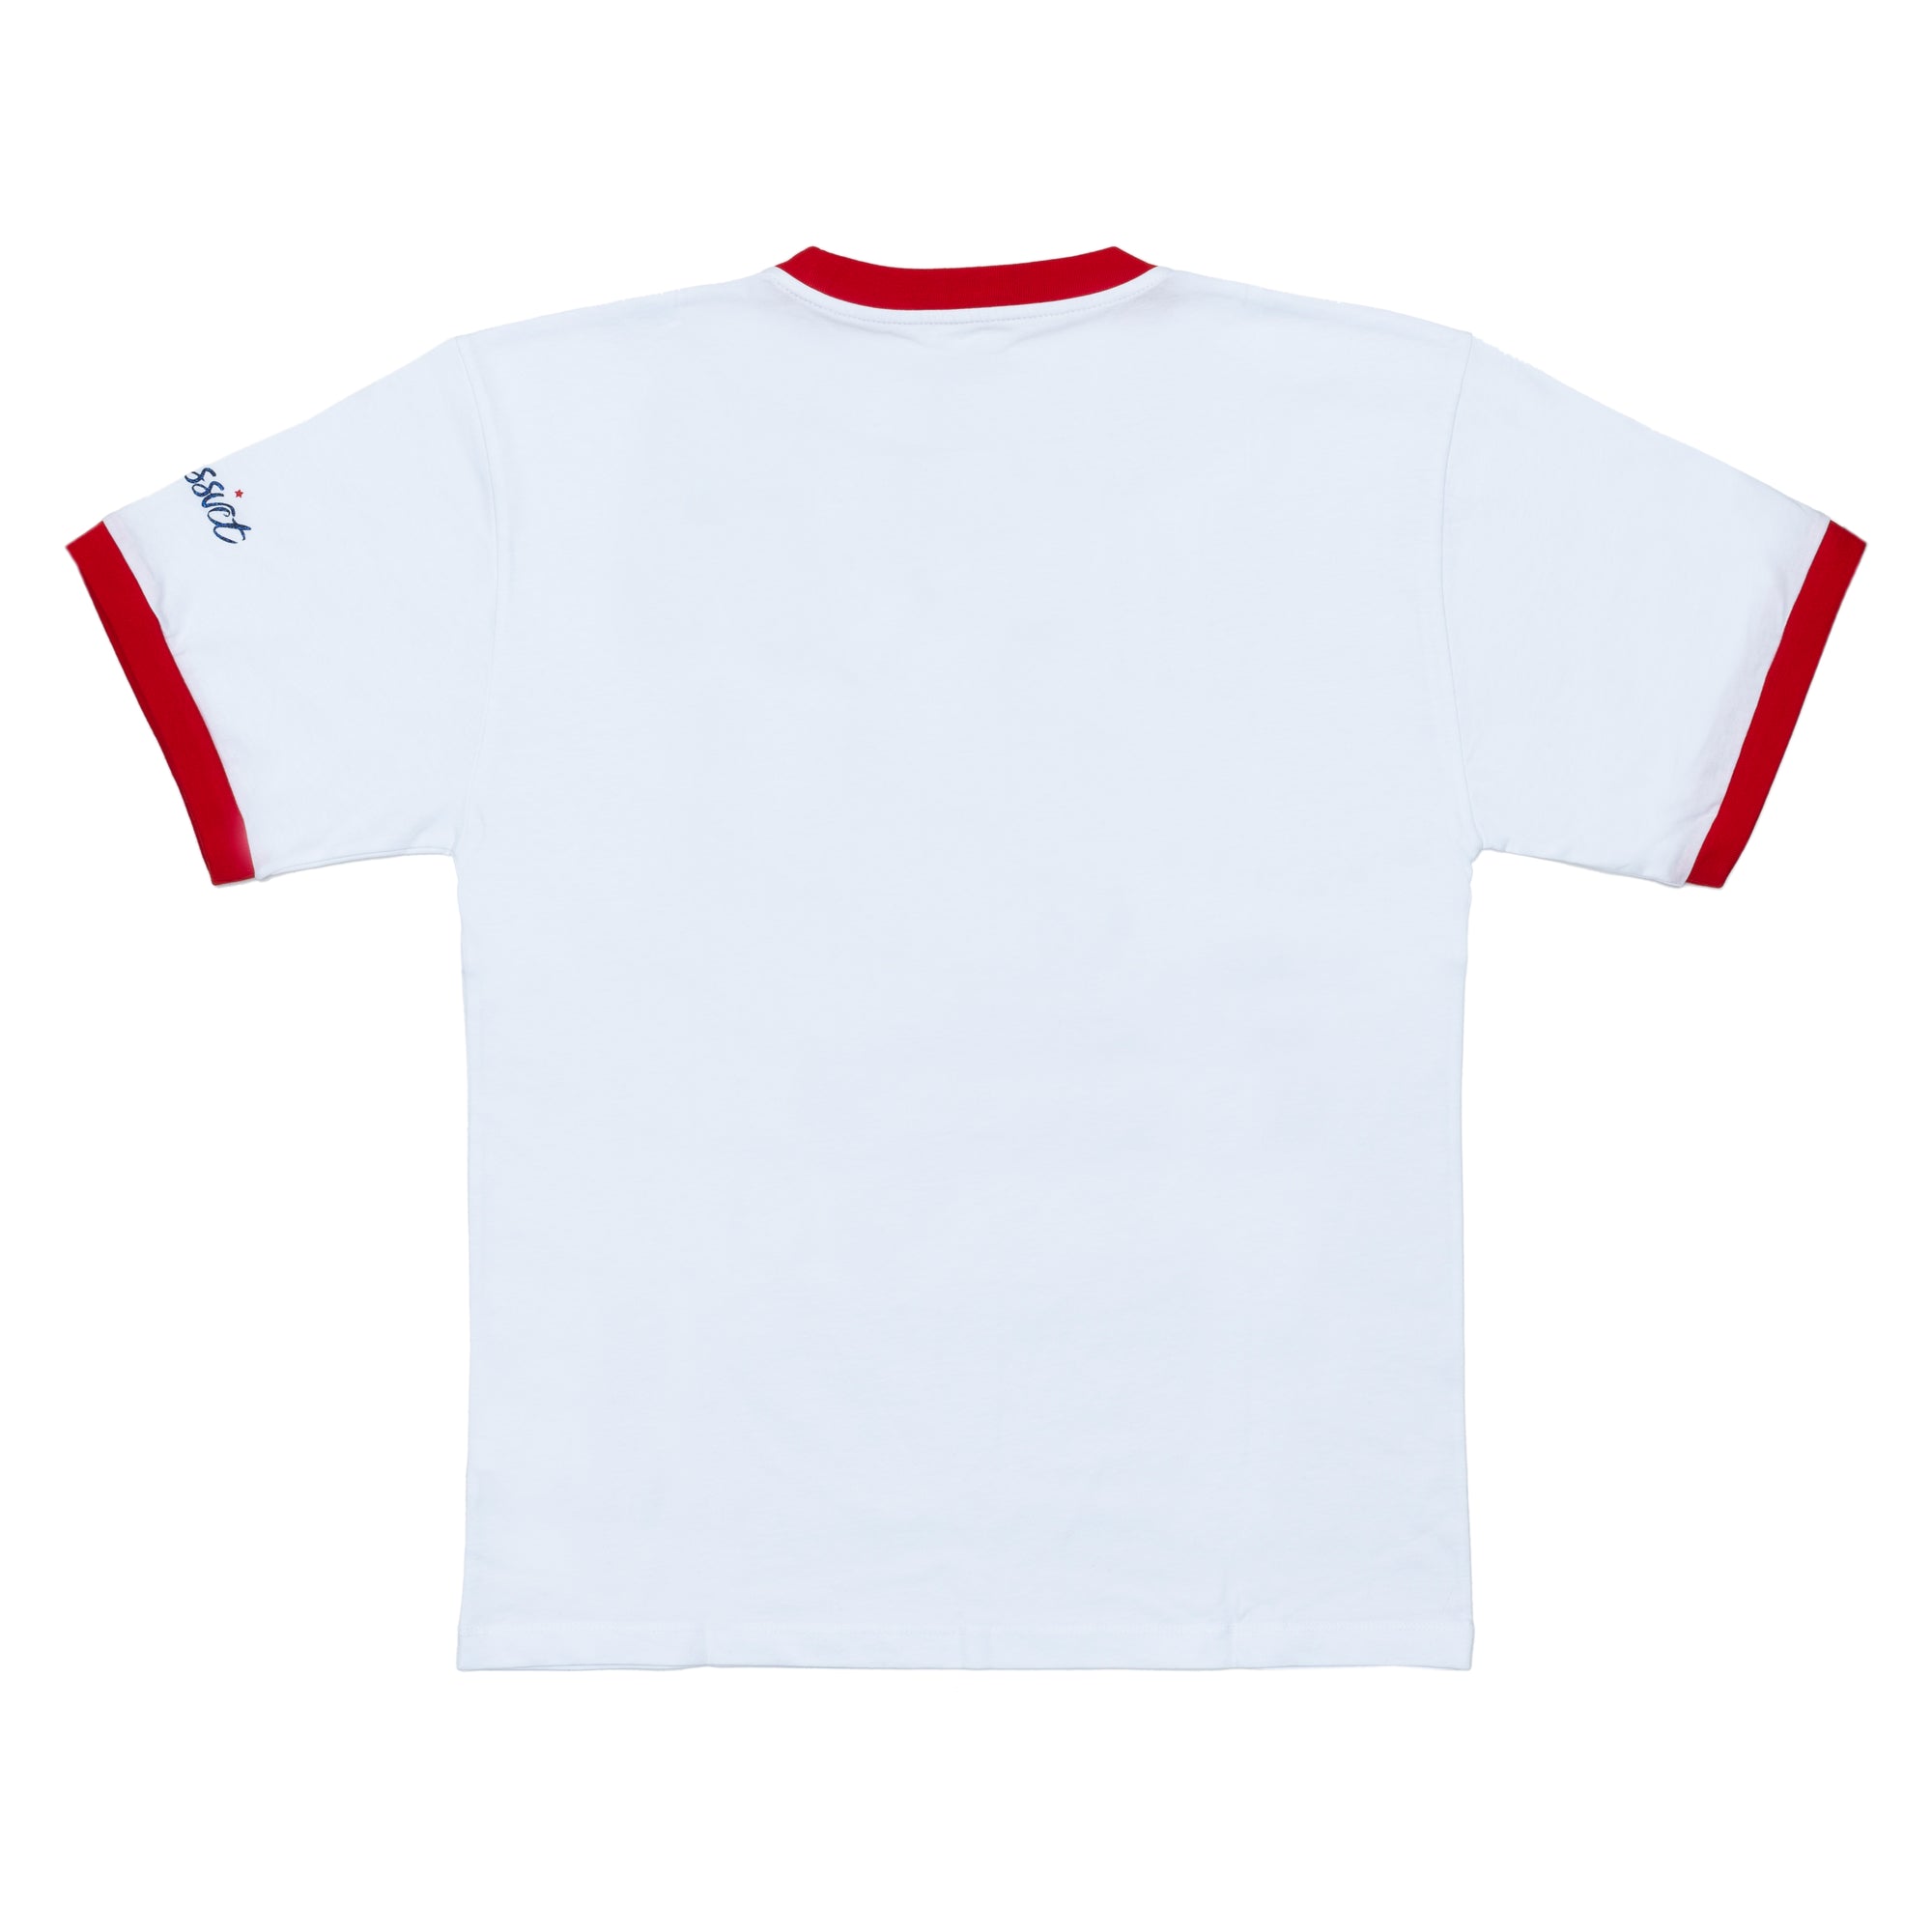 RASSVET - Free To Sparkle Tee Shirt  - (White) view 2